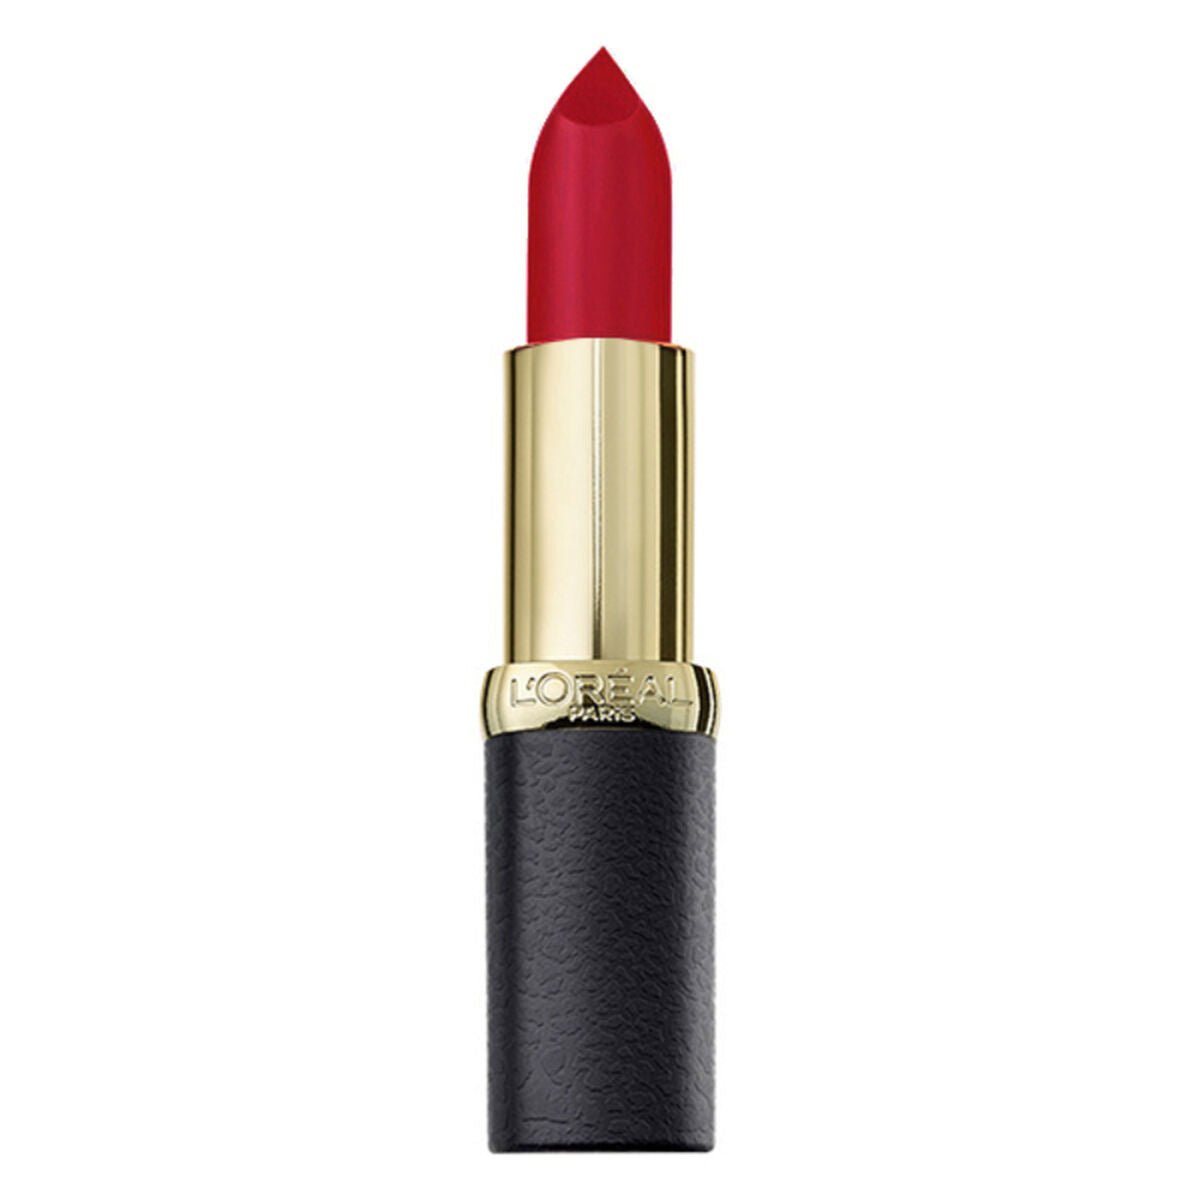 Lipstick Color Riche L'Oreal Make Up (4,8 g) 3,6 g